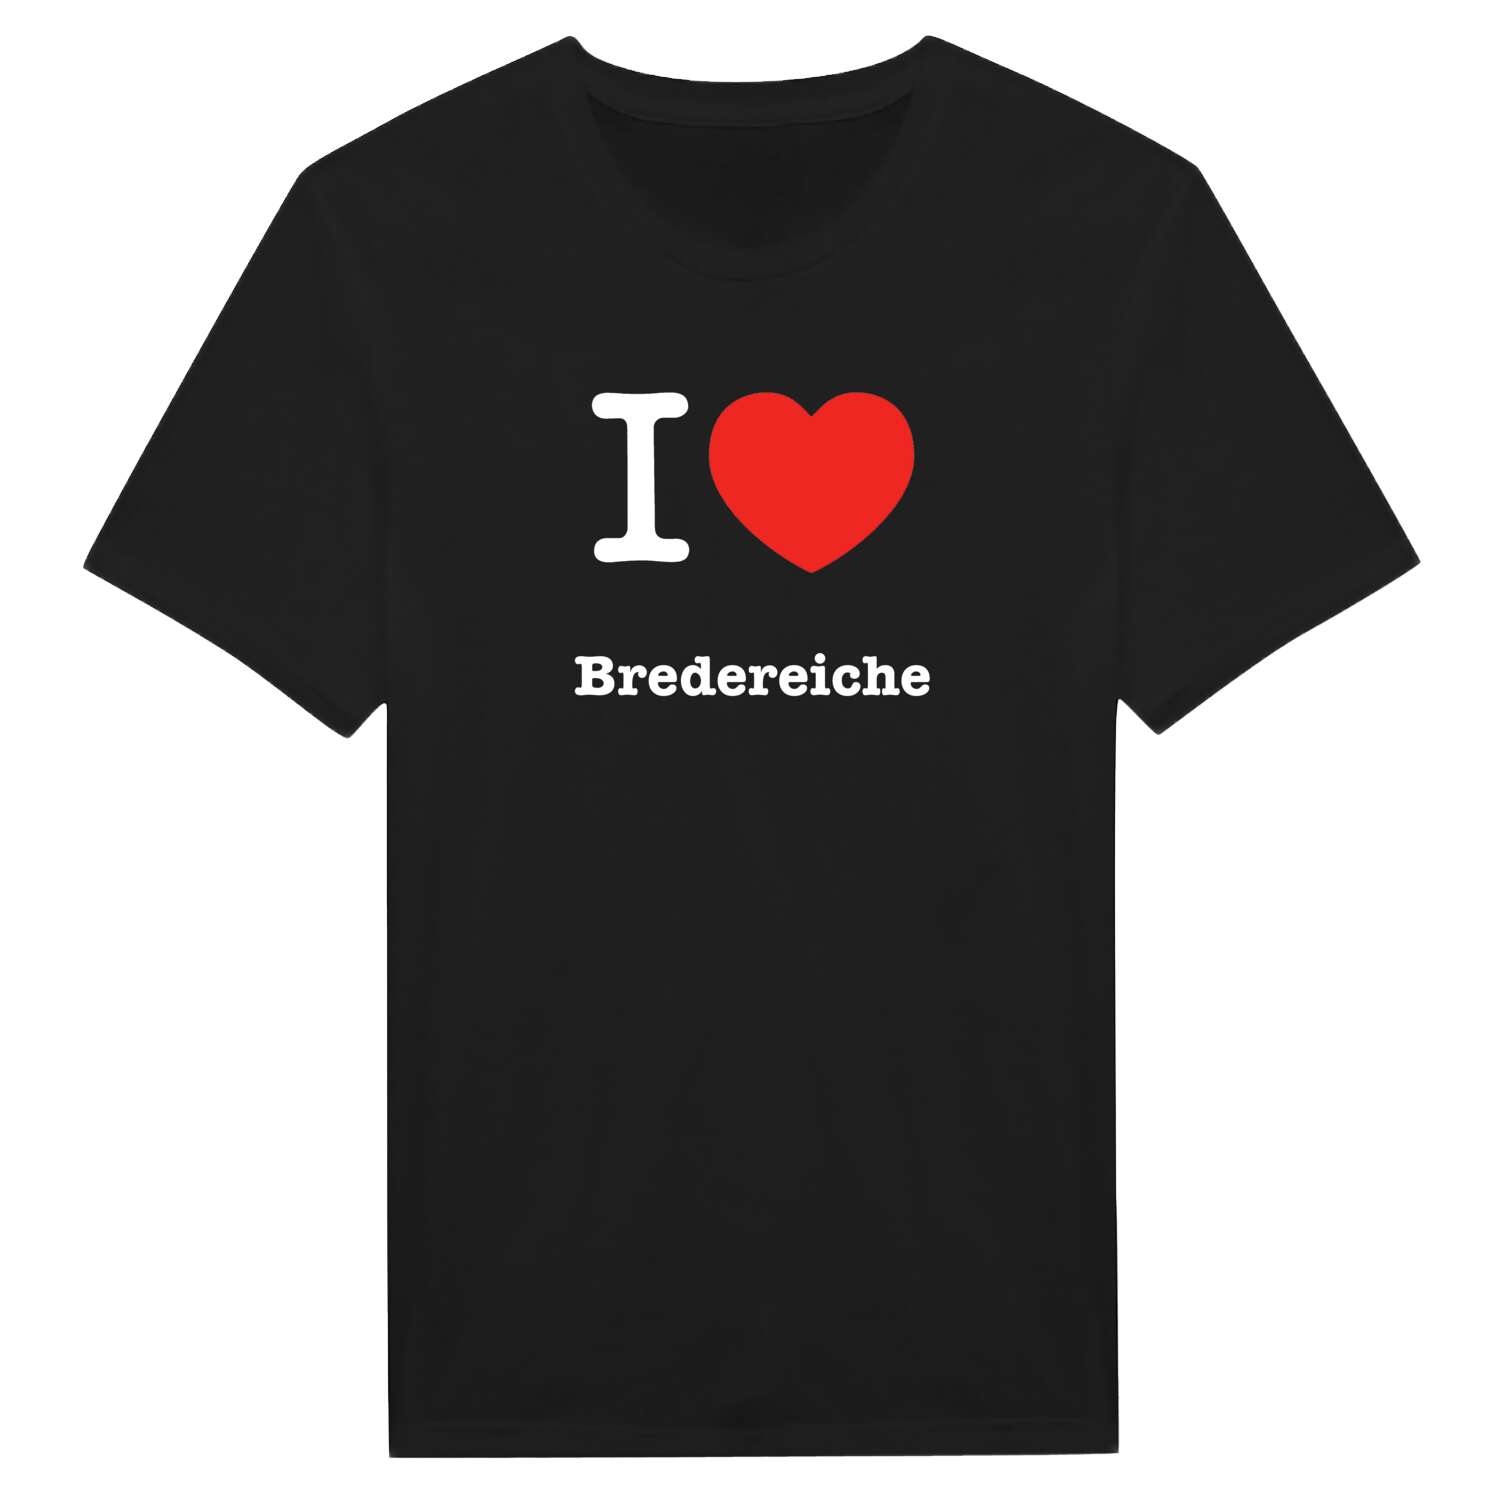 Bredereiche T-Shirt »I love«